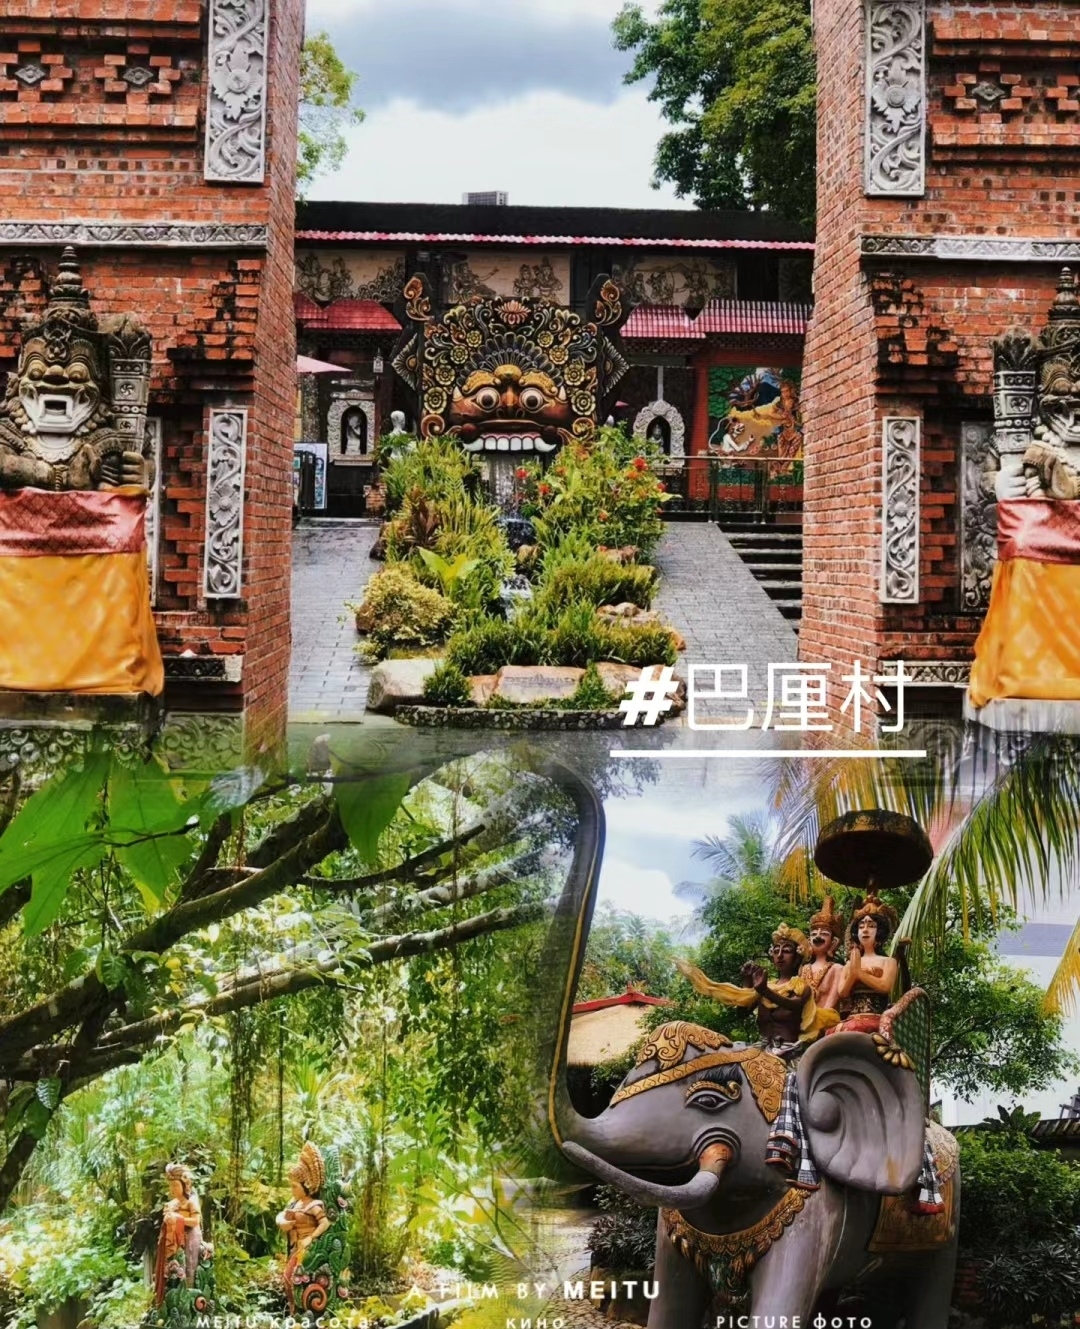 巴厘村是海南省三亚市一个充满热带风情的旅游胜地，为游客呈现了一个独特的巴厘岛文化氛围。以下是为您精心